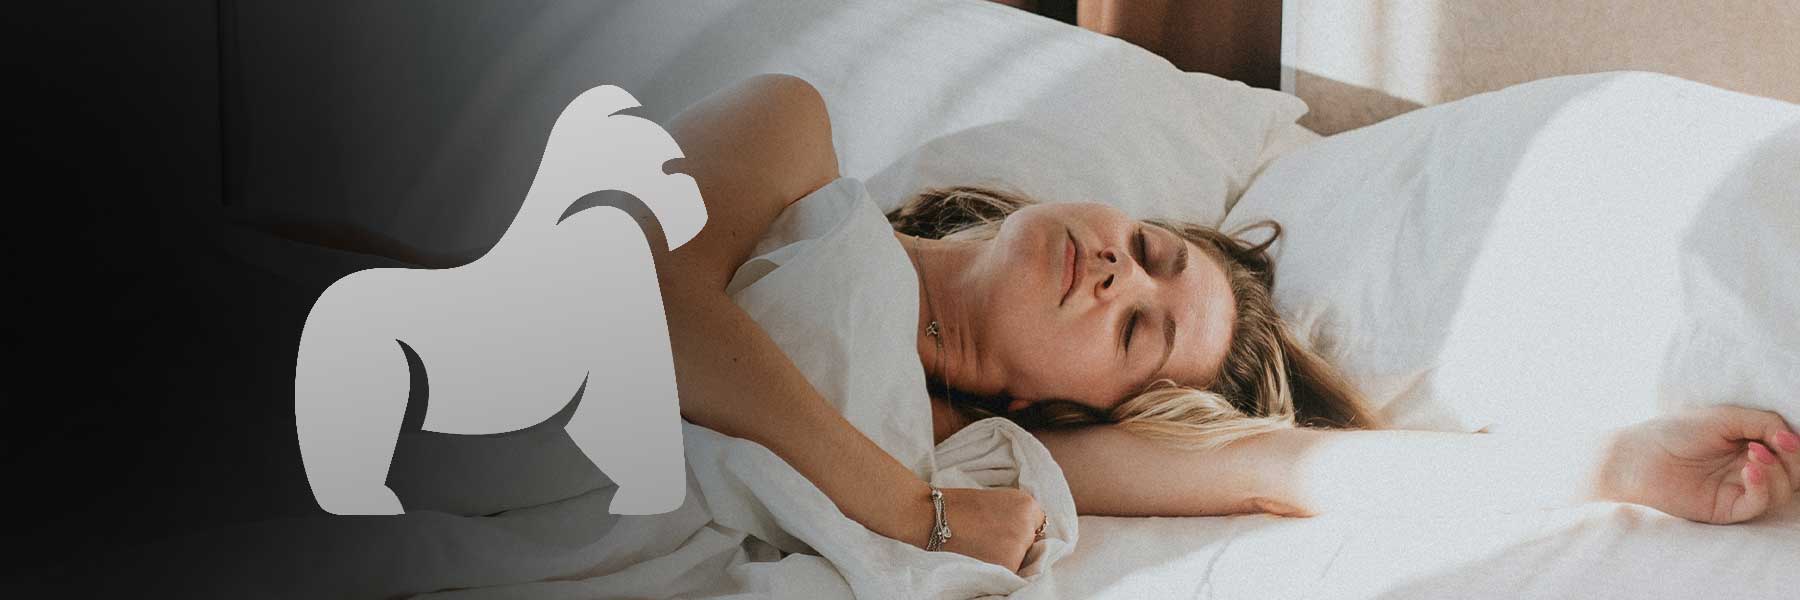 Warum benötigen Frauen mehr Schlaf als Männer?